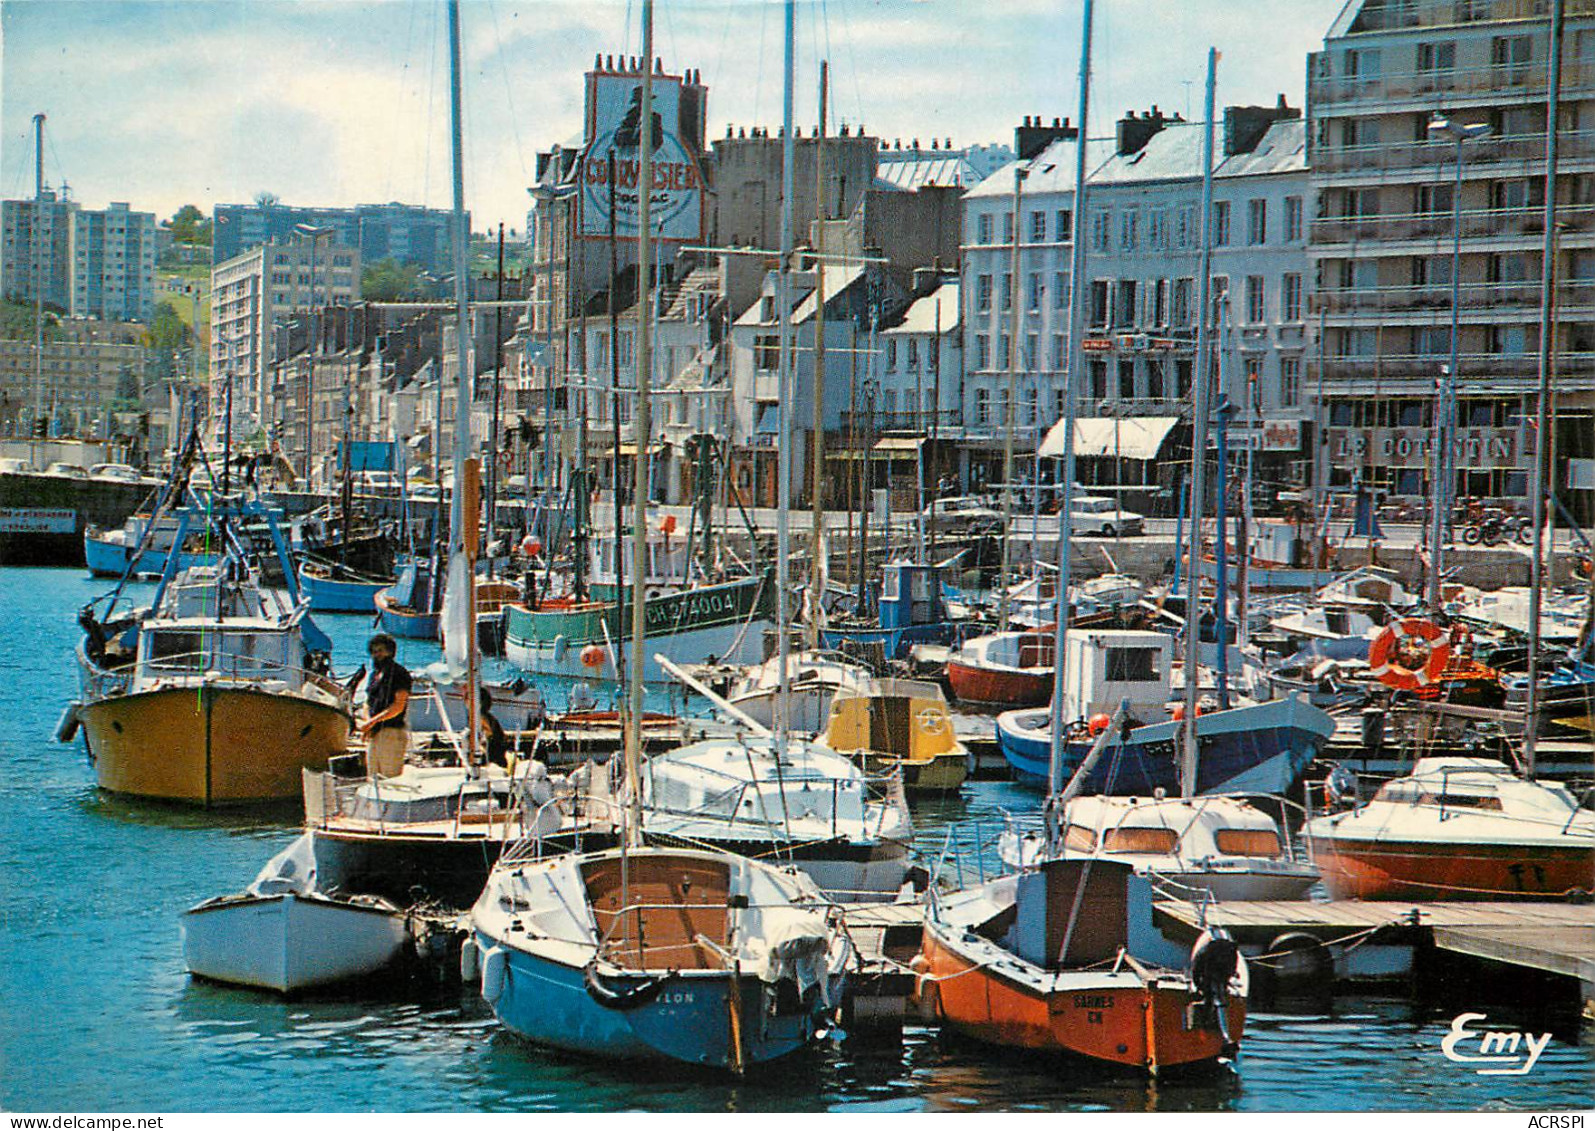 CHERBOURG L Avant Port Et Le Quai De Caligny 17(scan Recto Verso)MF2733 - Cherbourg